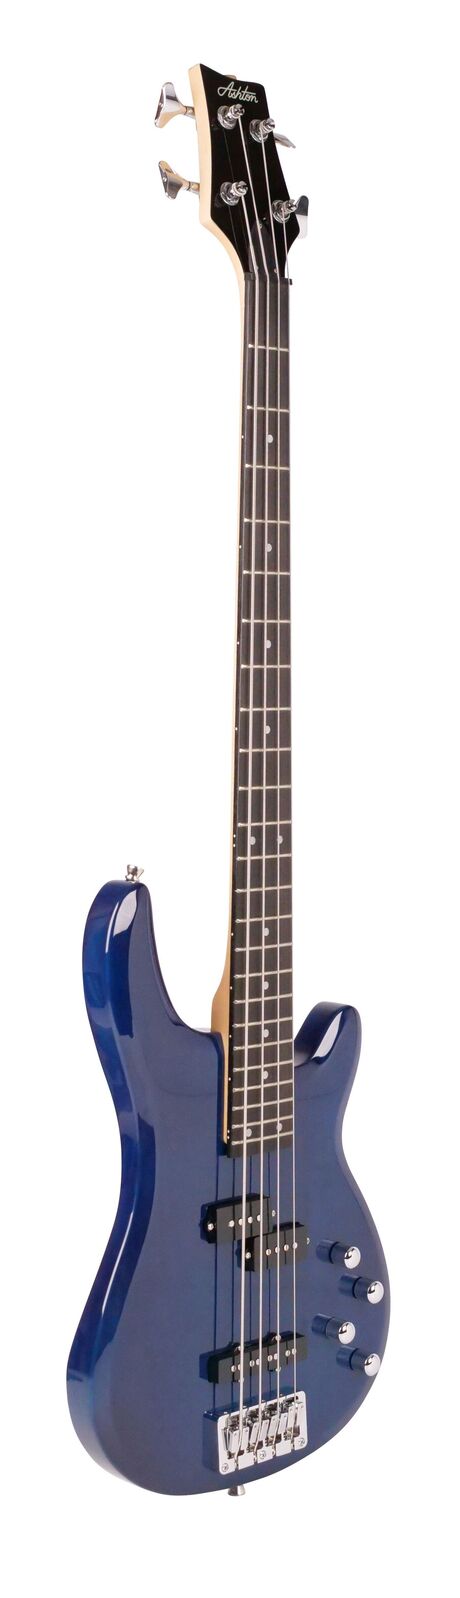 The Ashton AB4TDB Bass Guitar in Blue